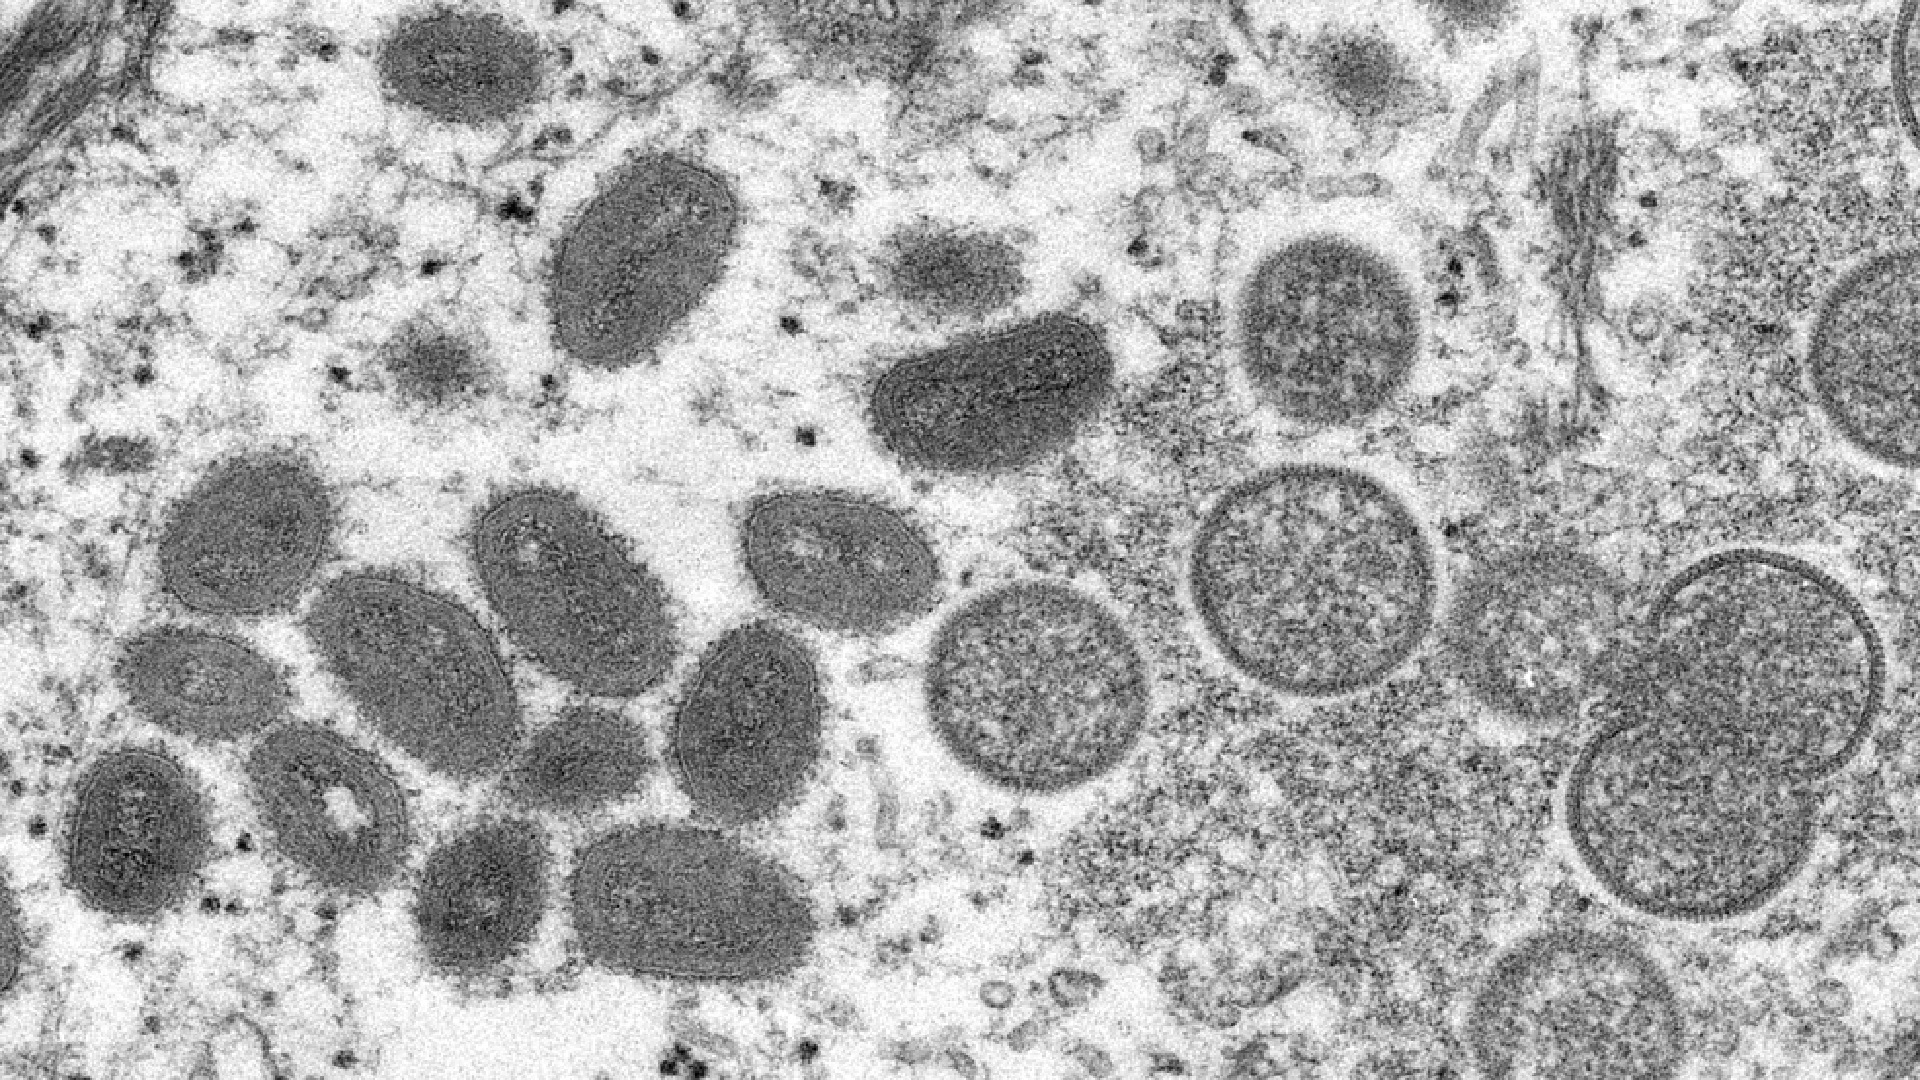 variola do macaco centro de controle de doencas divulgacao